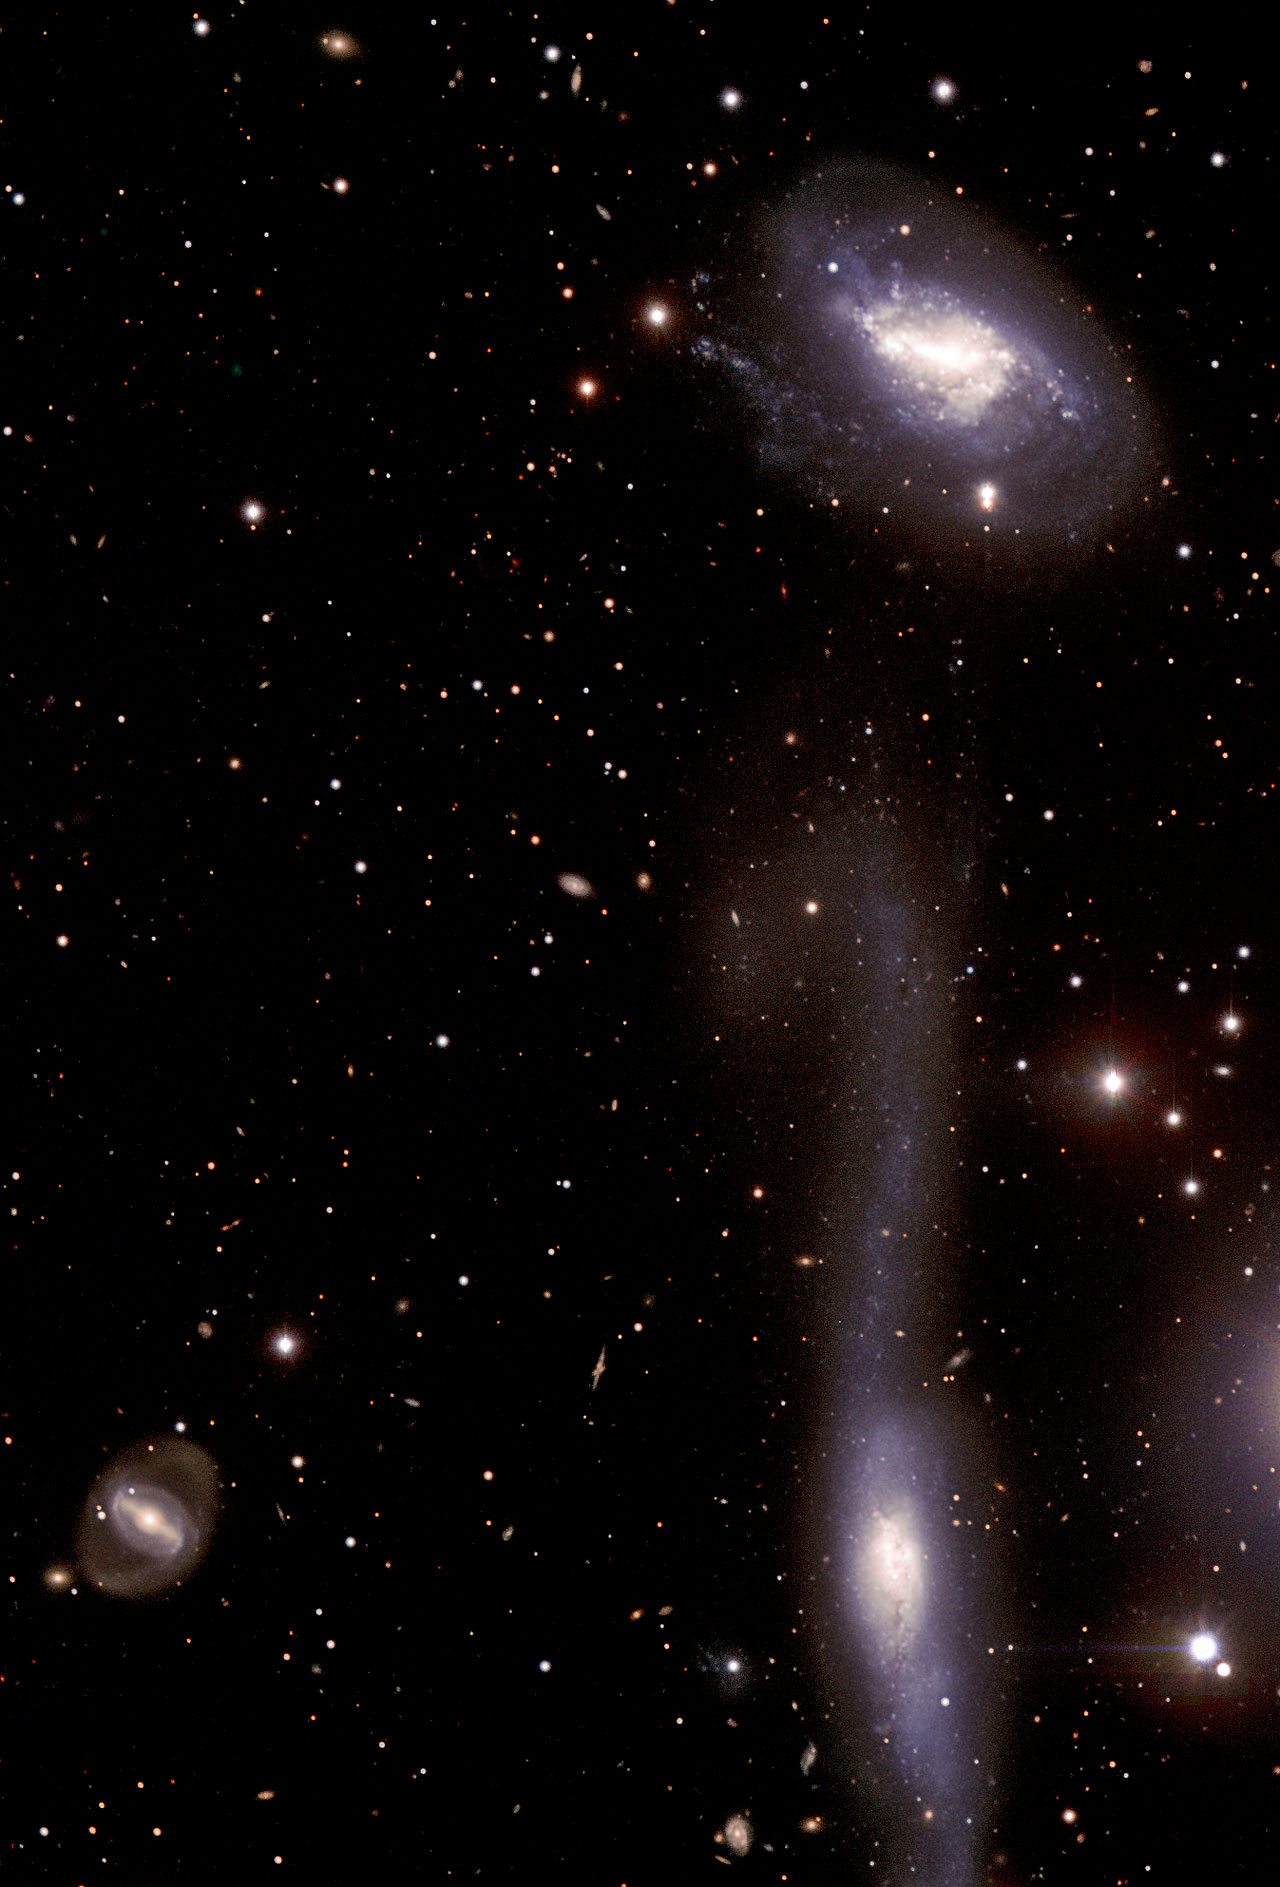 MCG-01-39-003 and NGC 5917 (interacting galaxies)